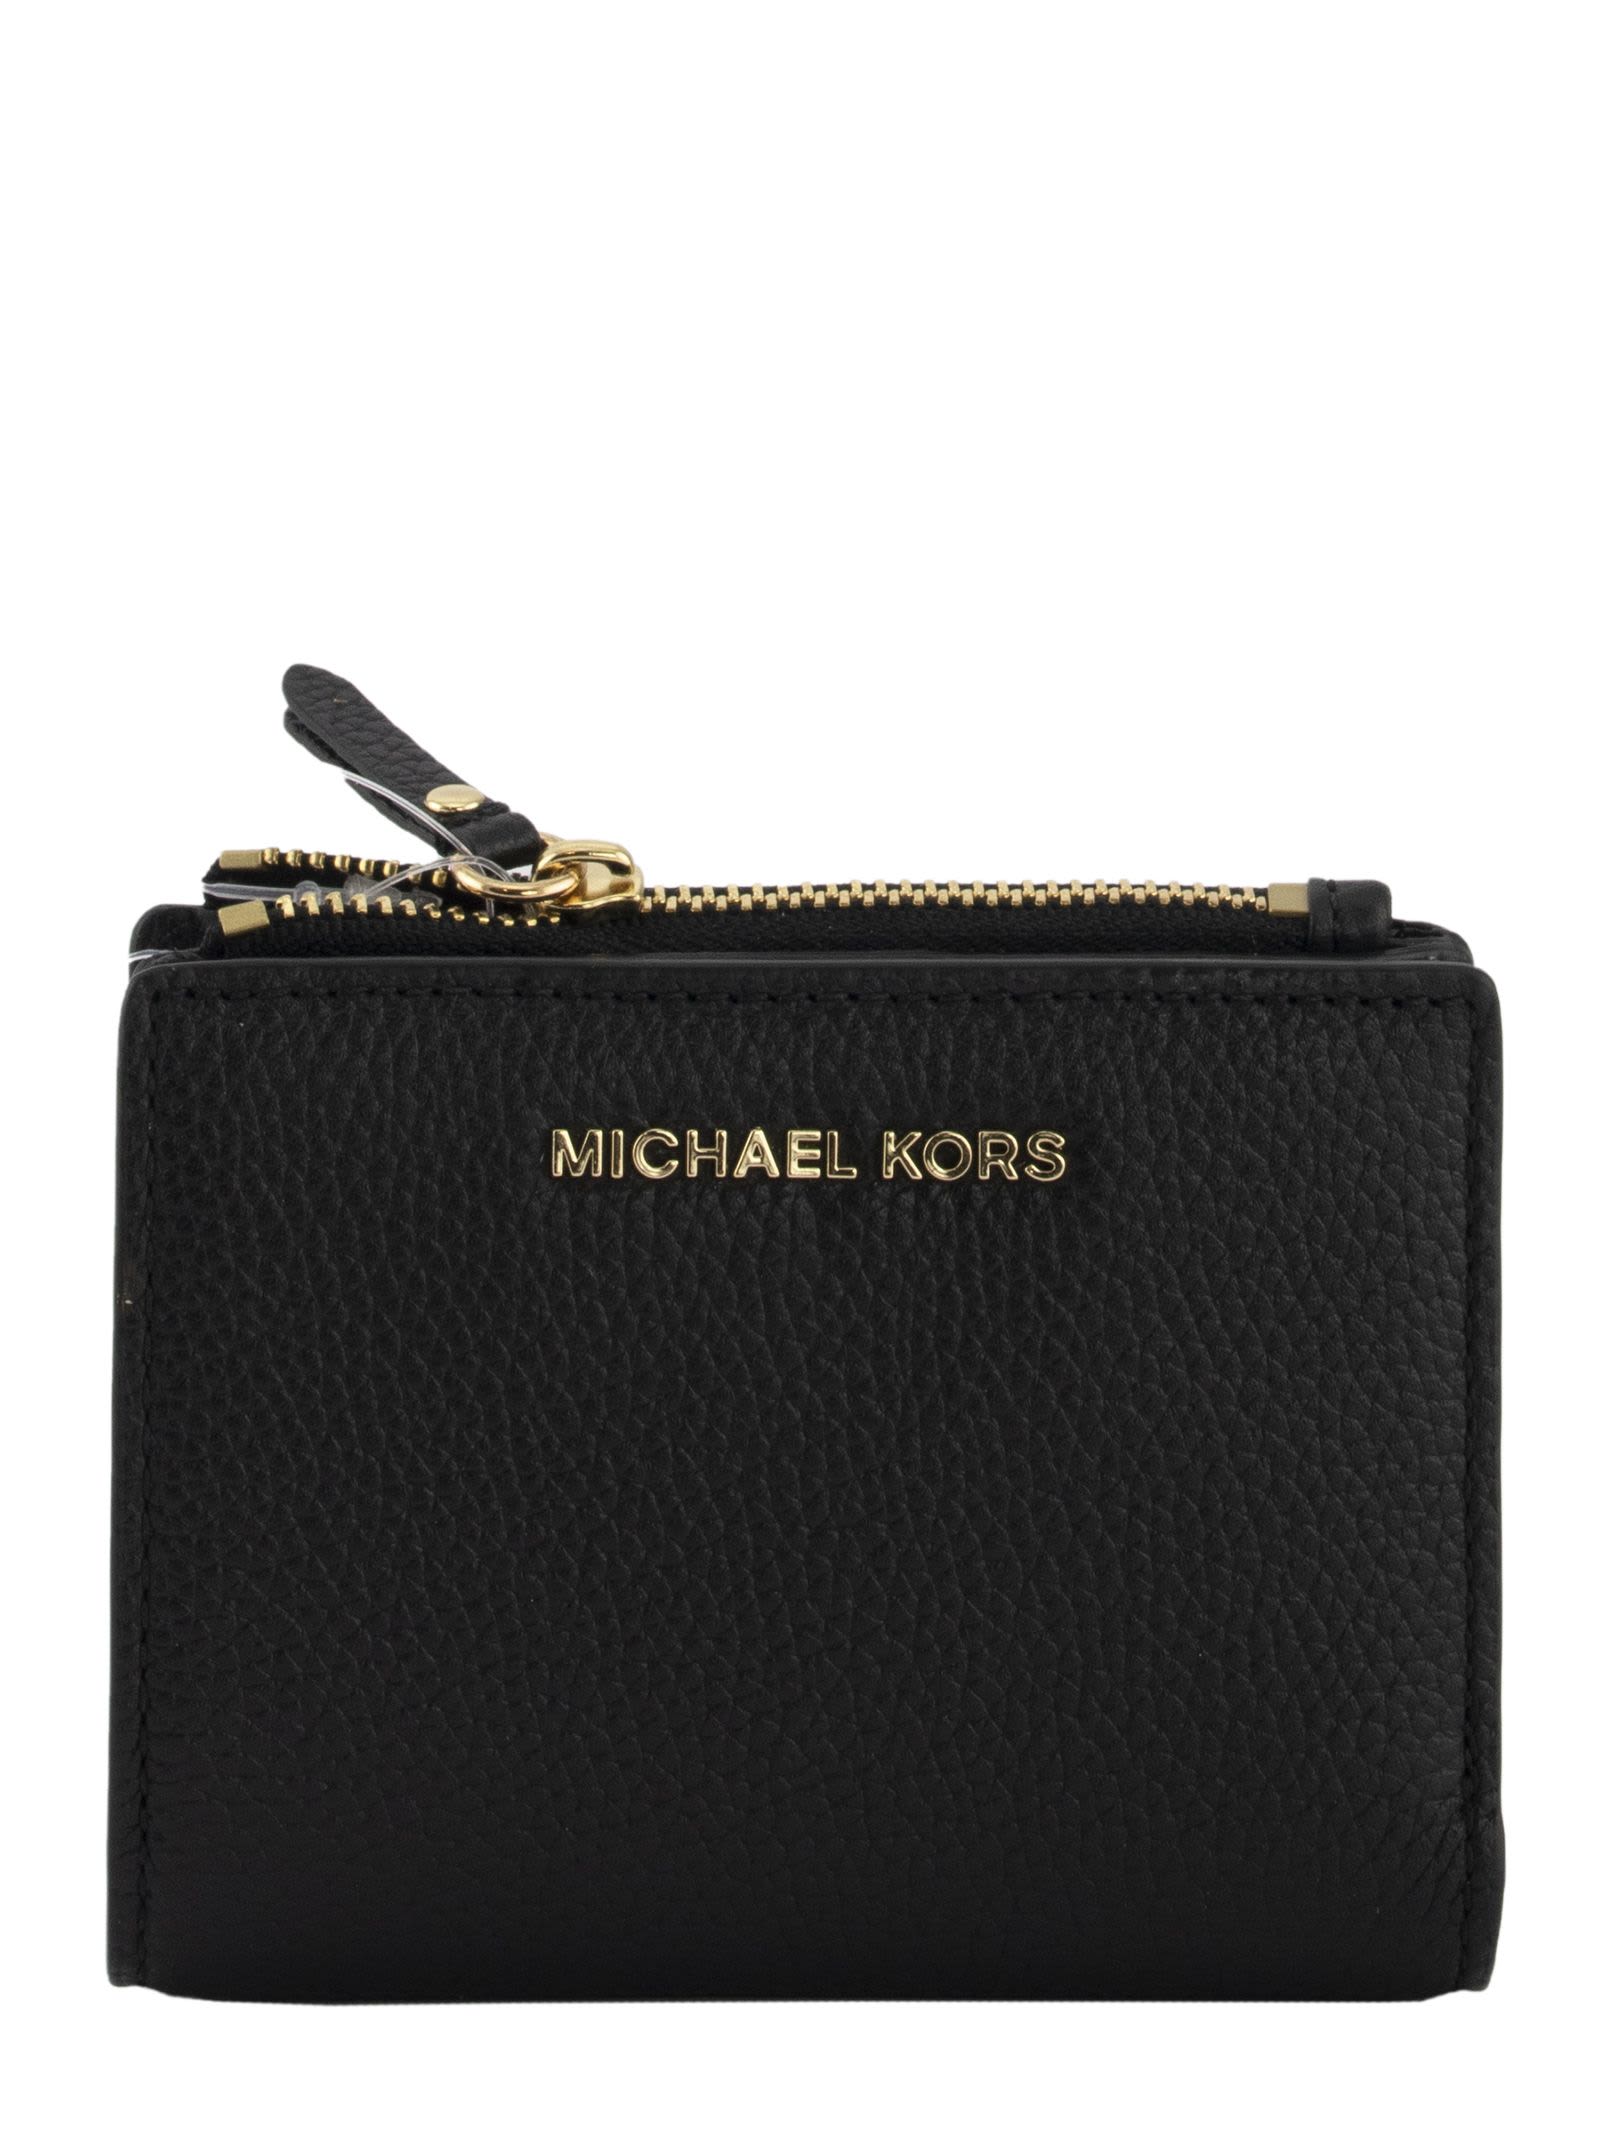 Michael Kors Michael Kors Zip Wallet 